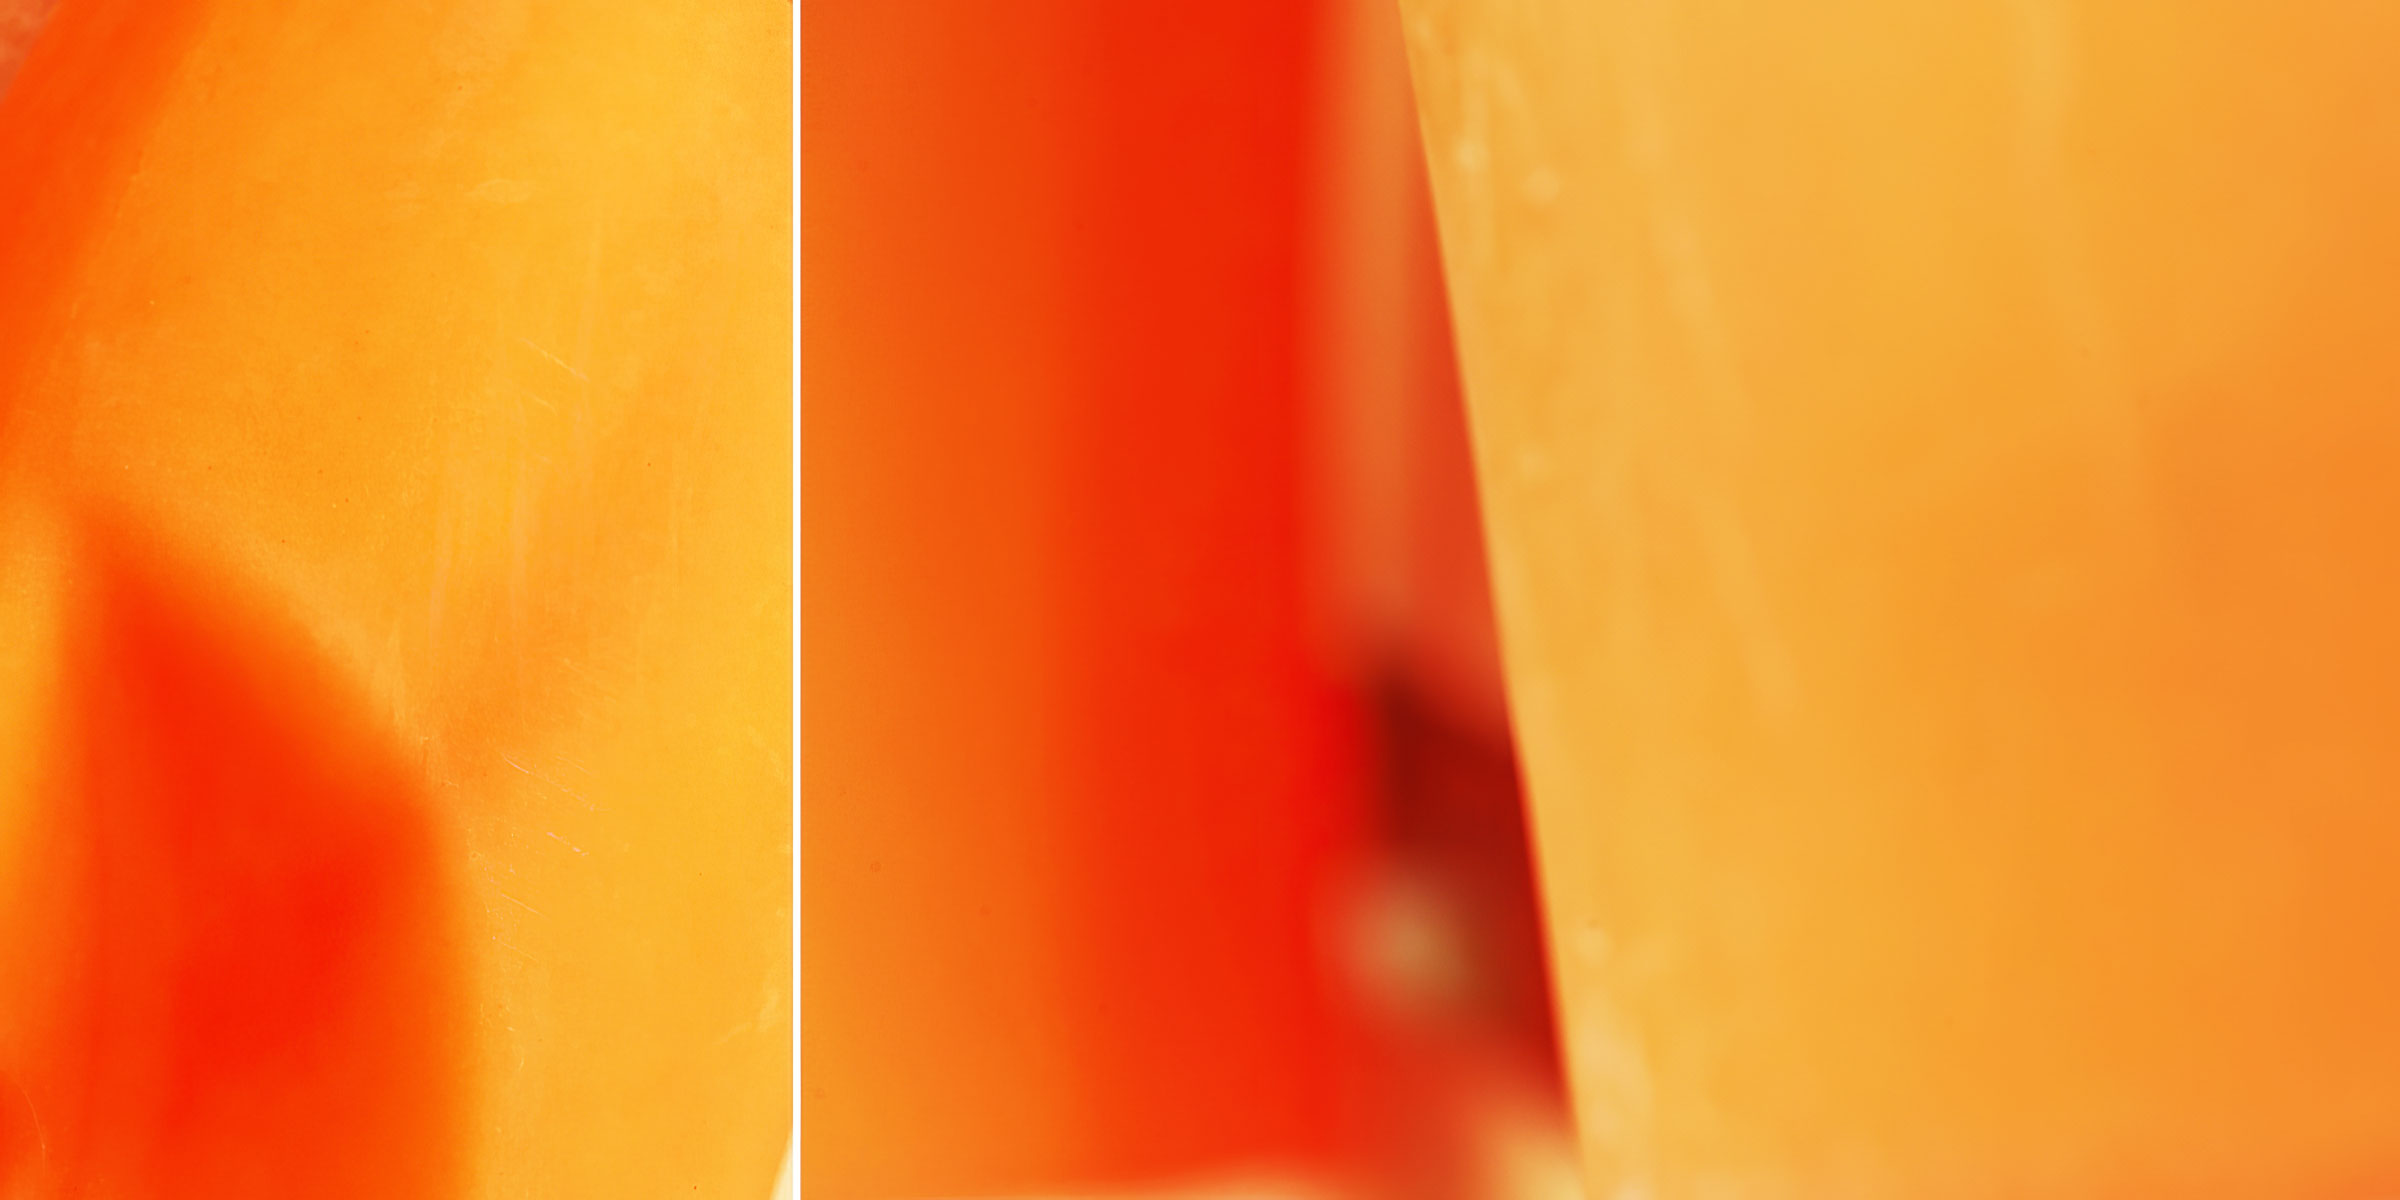 fotografie-esslingen-michael-diehl-photography-hellrot-orange